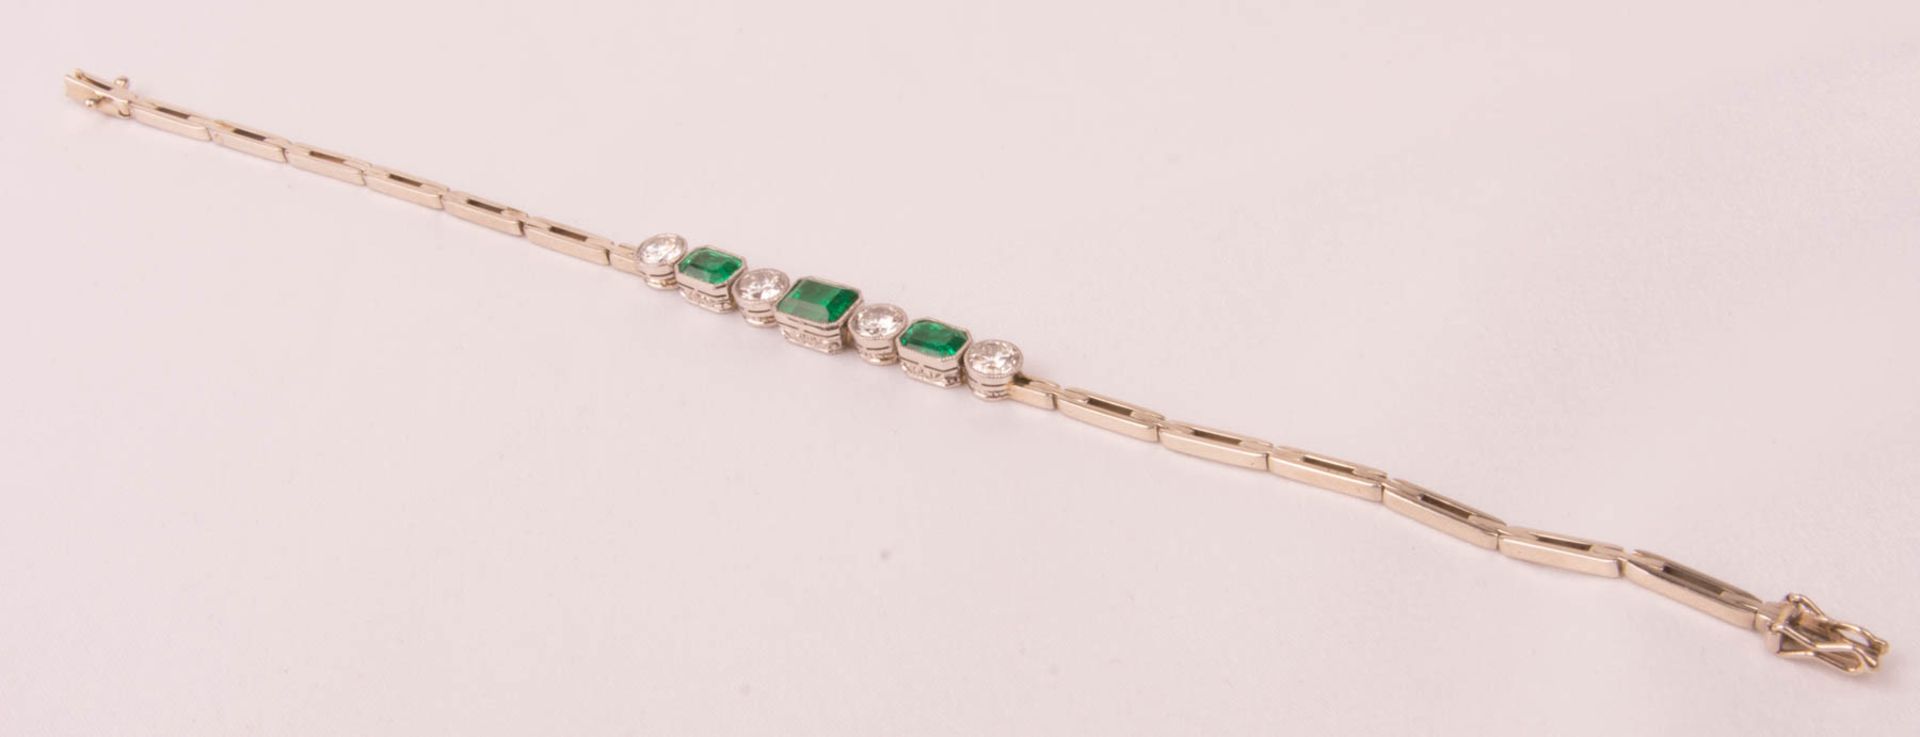 Armband mit passendem Ring, Smaragden und Diamanten, 585er/750er Weißgold. - Bild 3 aus 7